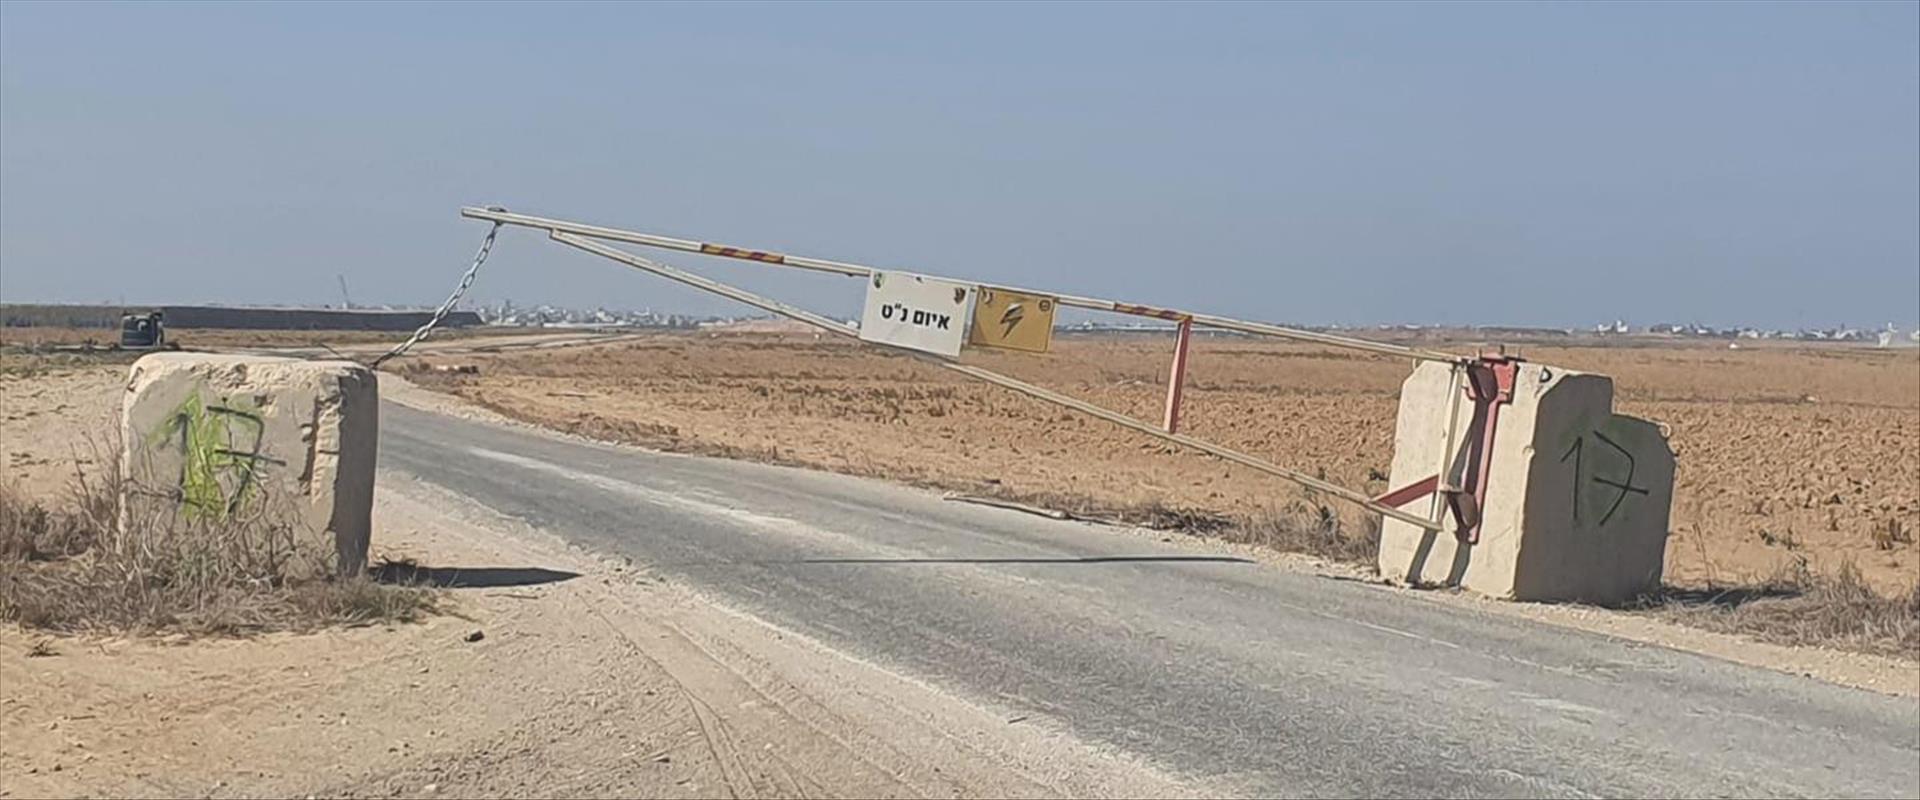 השערים לשדות החקלאיים שנסגרו באזור גבול עזה, היום